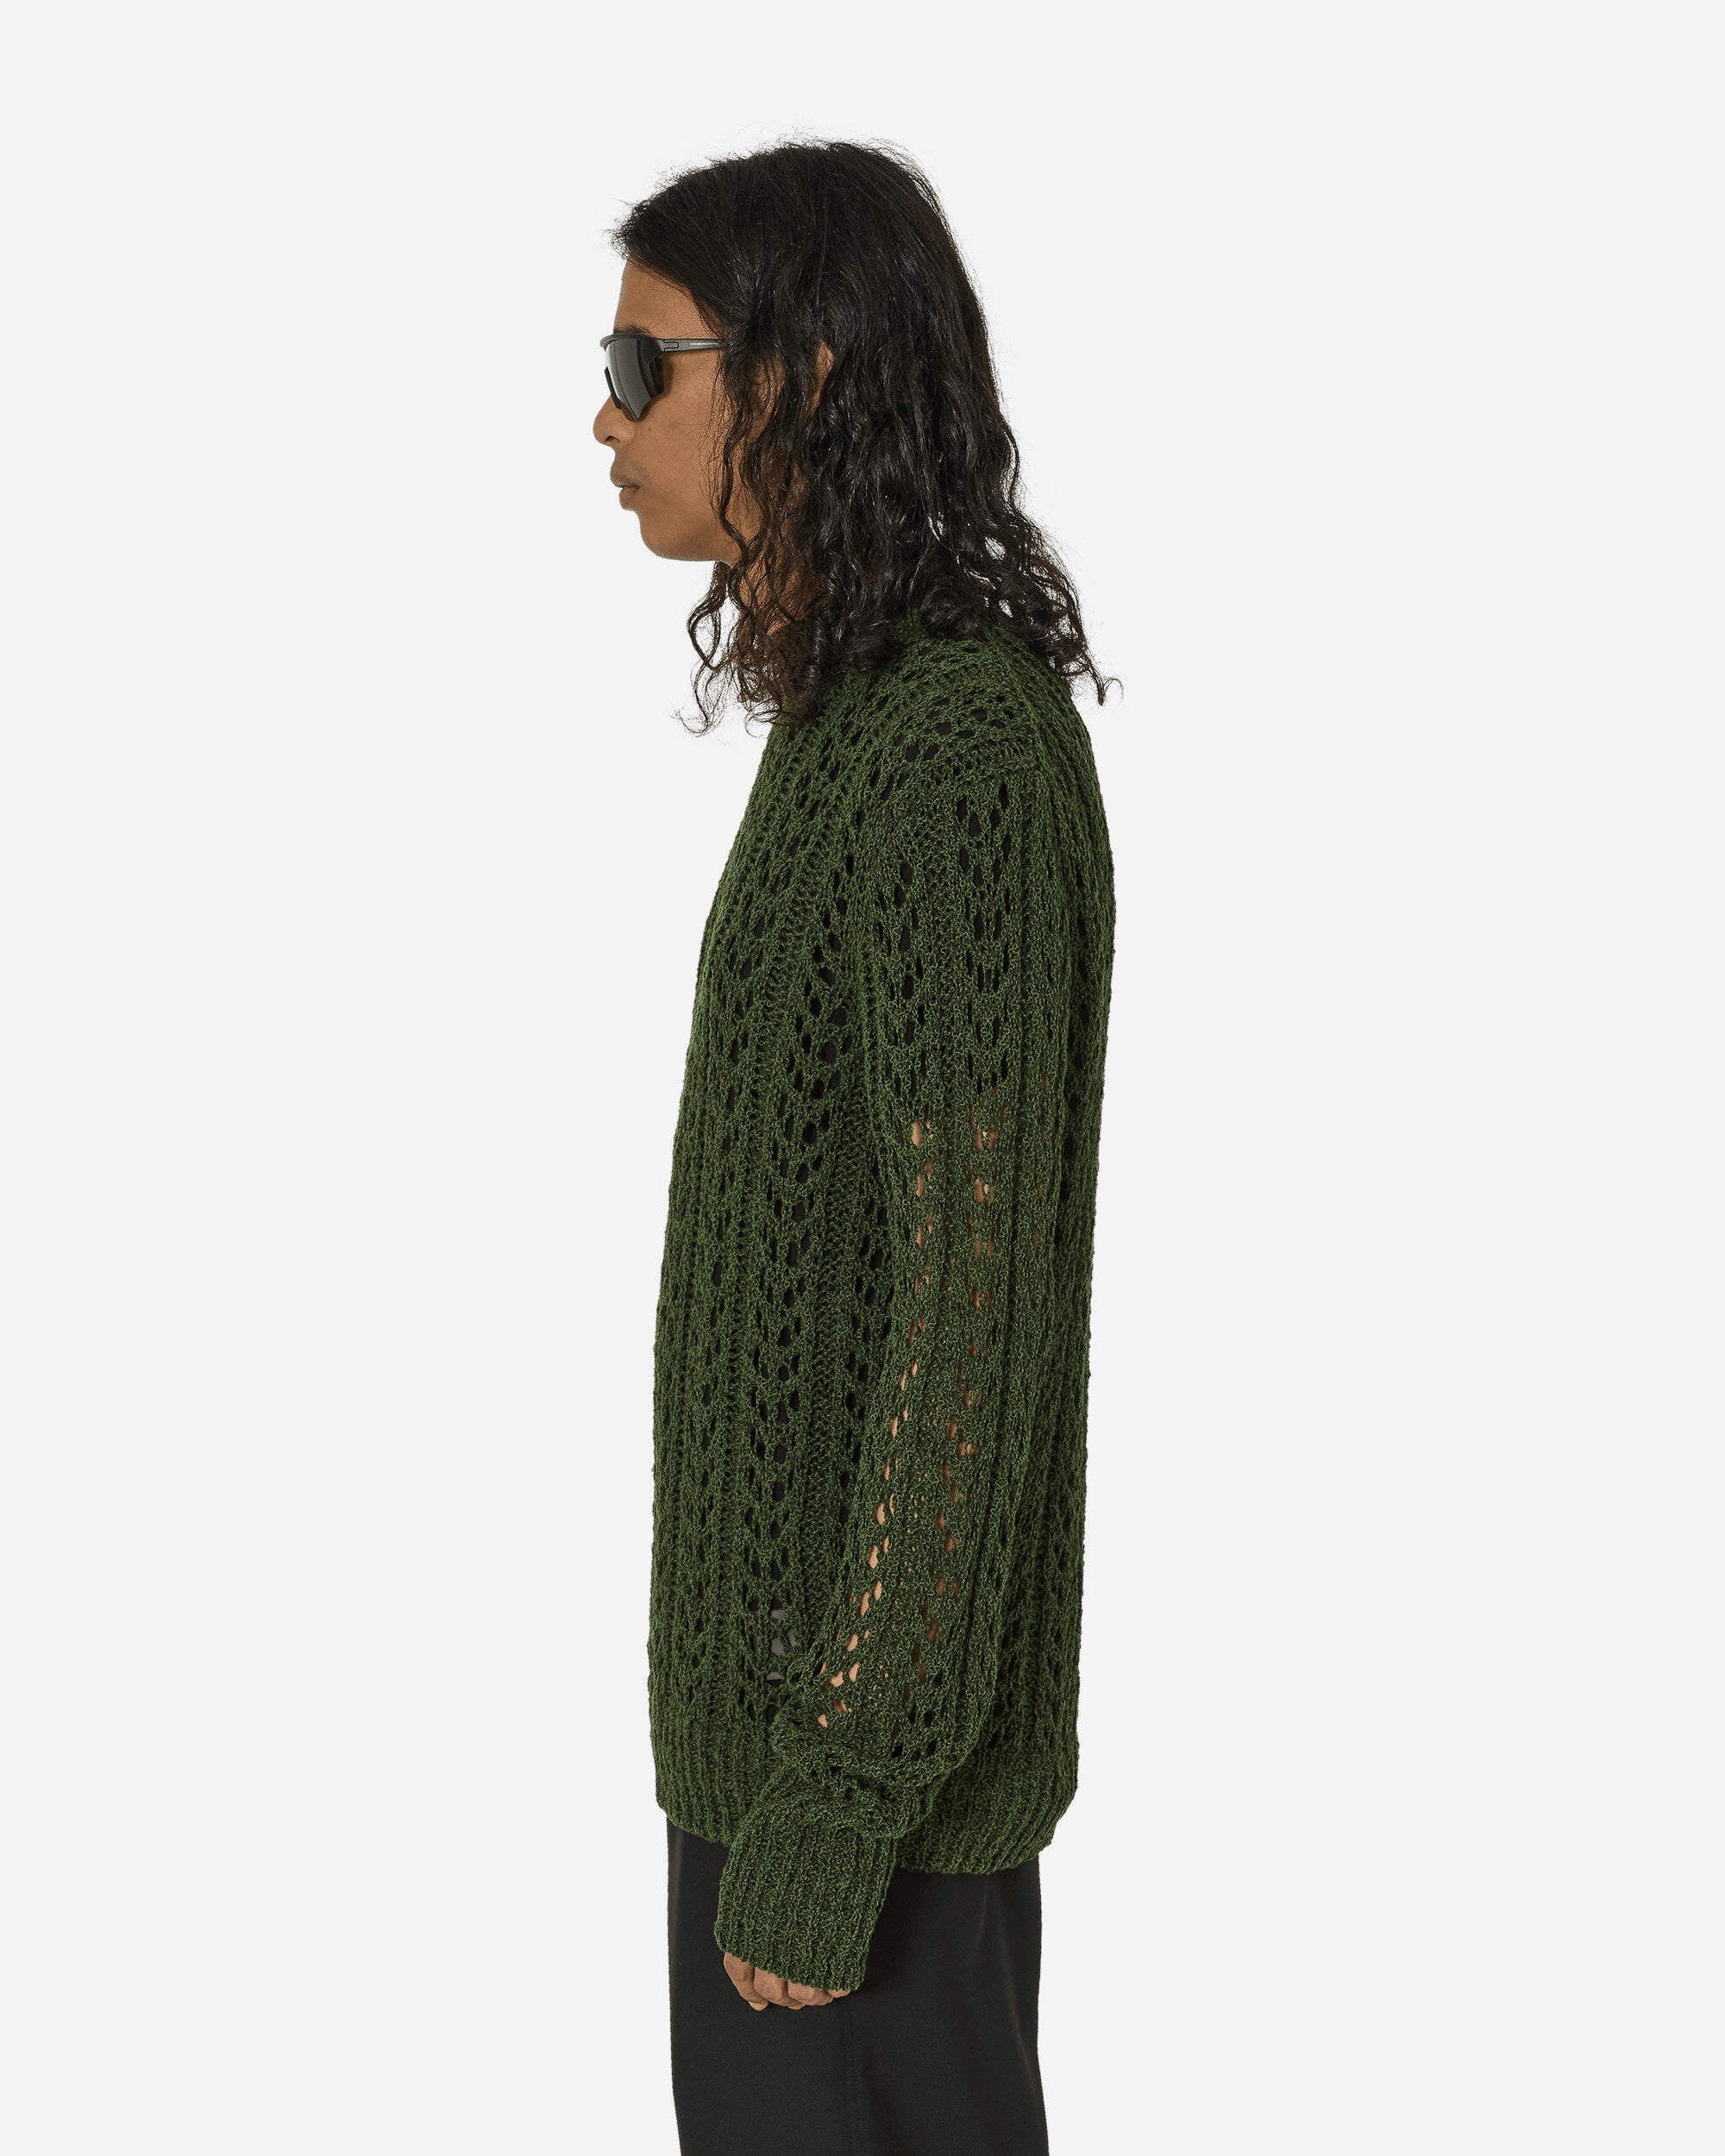 _J.L-A.L_ Redos Knitted Jumper Dark Green Knitwears Sweaters JBMW046YA02 BLK0006